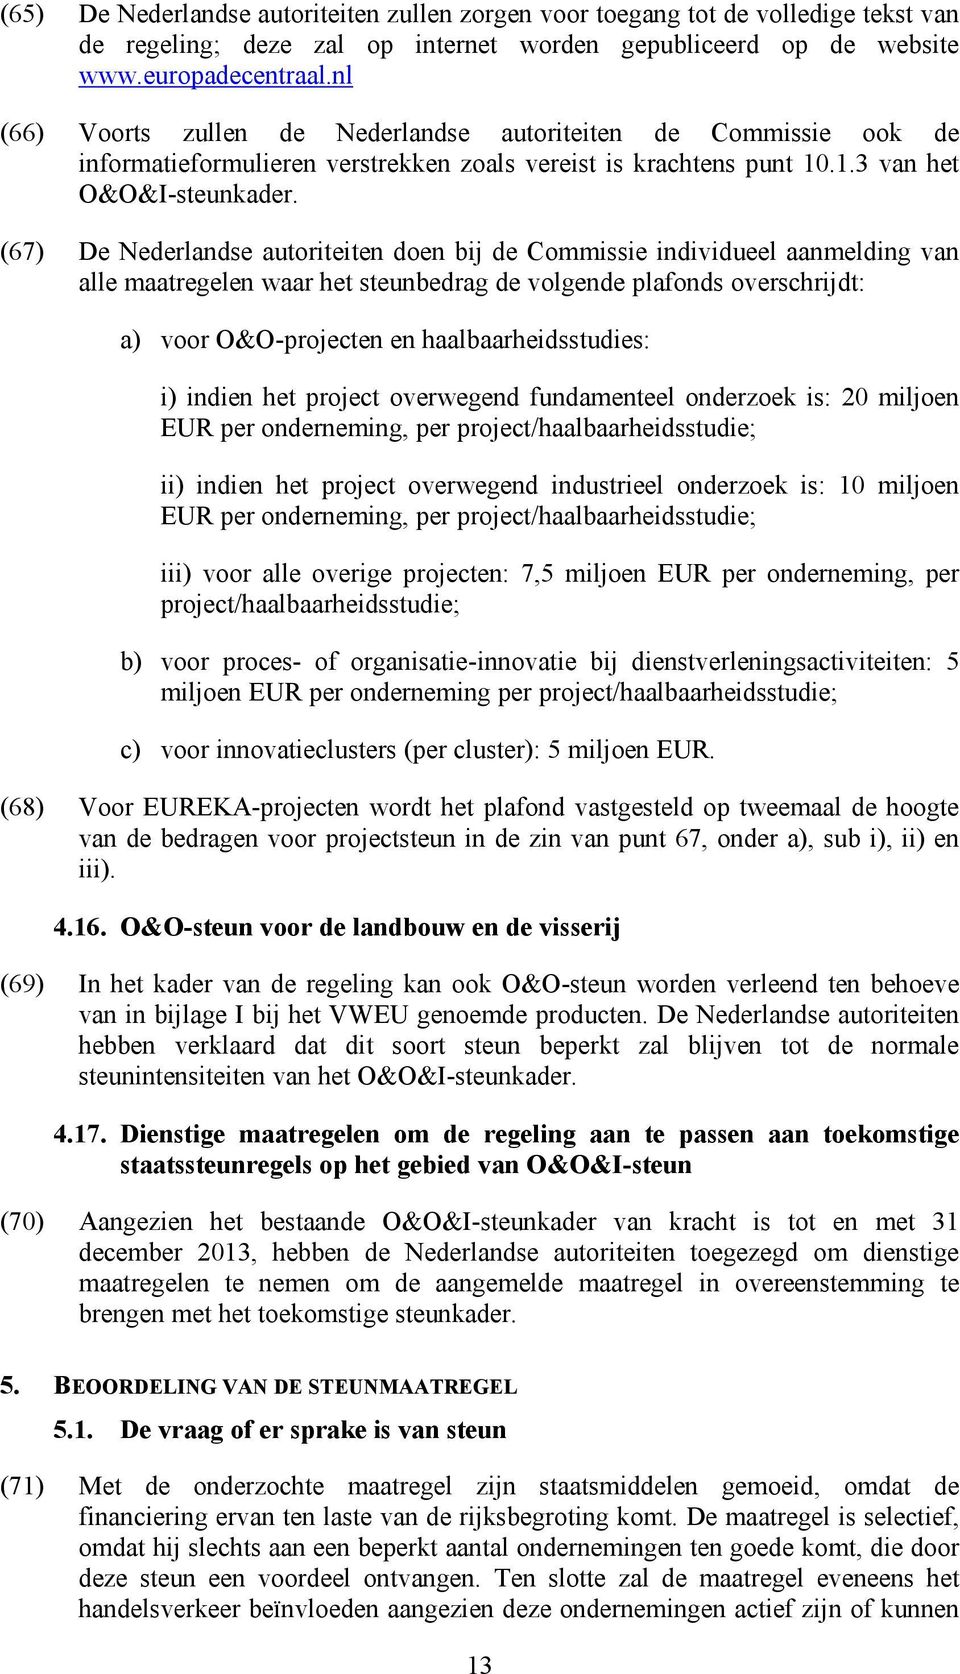 (67) De Nederlandse autoriteiten doen bij de Commissie individueel aanmelding van alle maatregelen waar het steunbedrag de volgende plafonds overschrijdt: a) voor O&O-projecten en